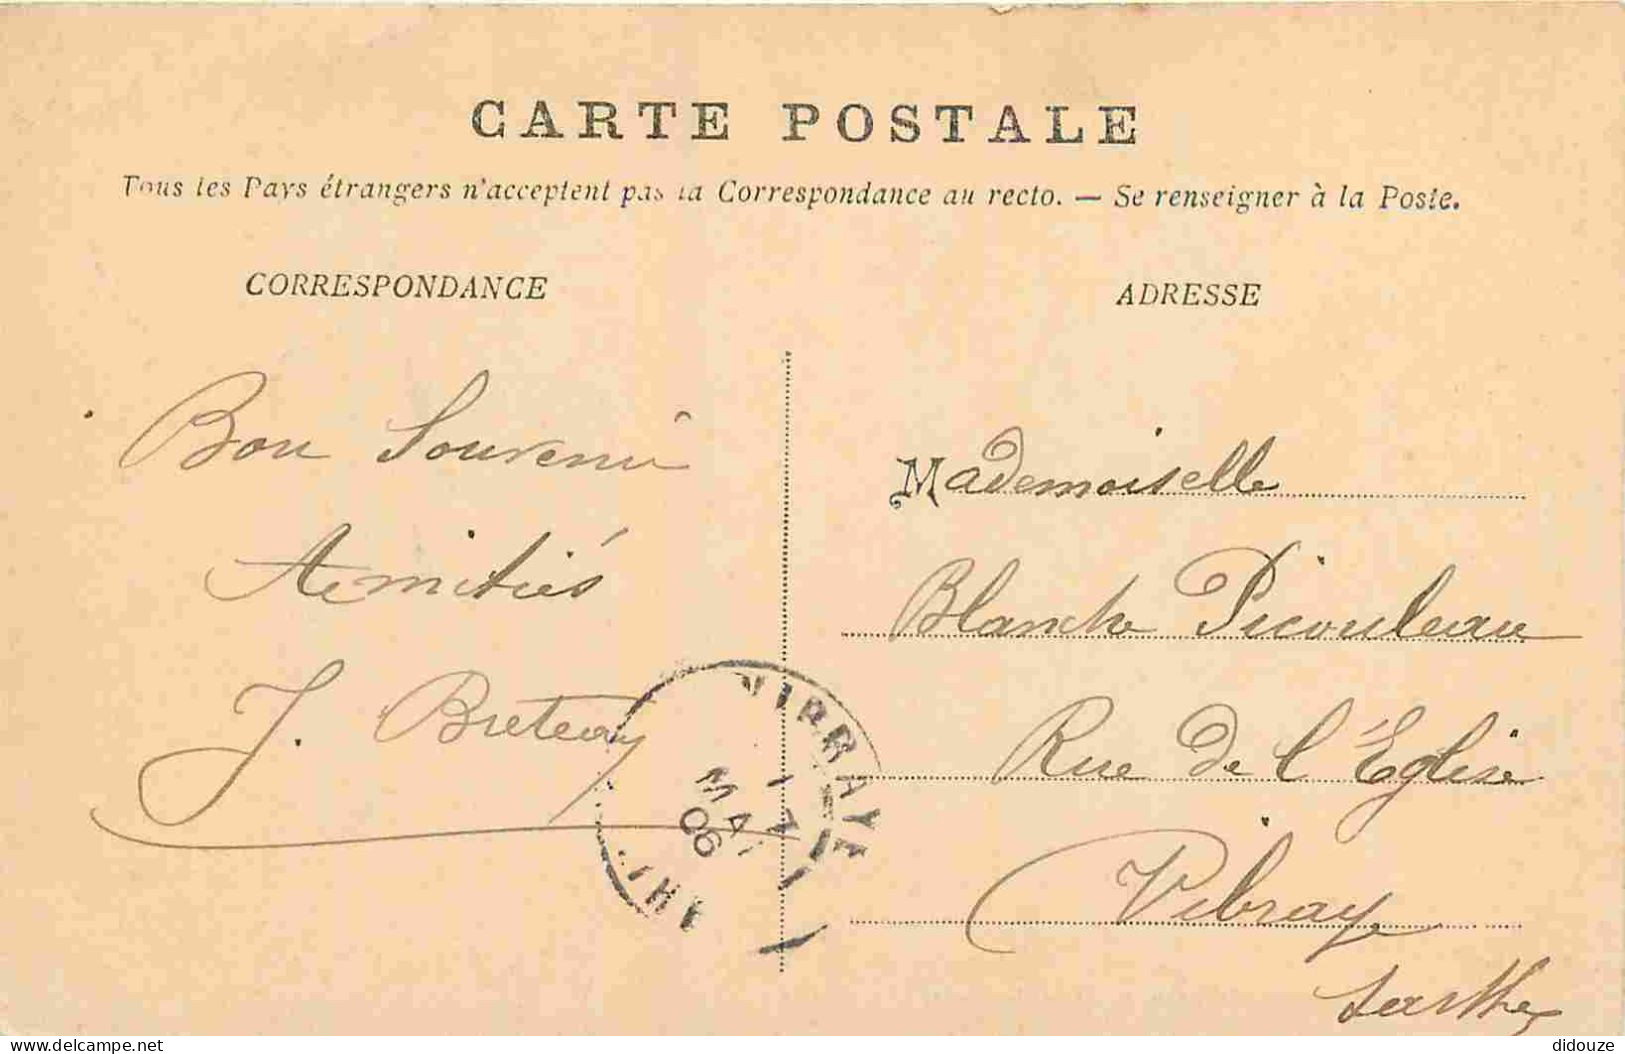 78 - Montfort - L'Eglise - CPA - Oblitération Ronde De 1906 - Voir Scans Recto-Verso - Montfort L'Amaury